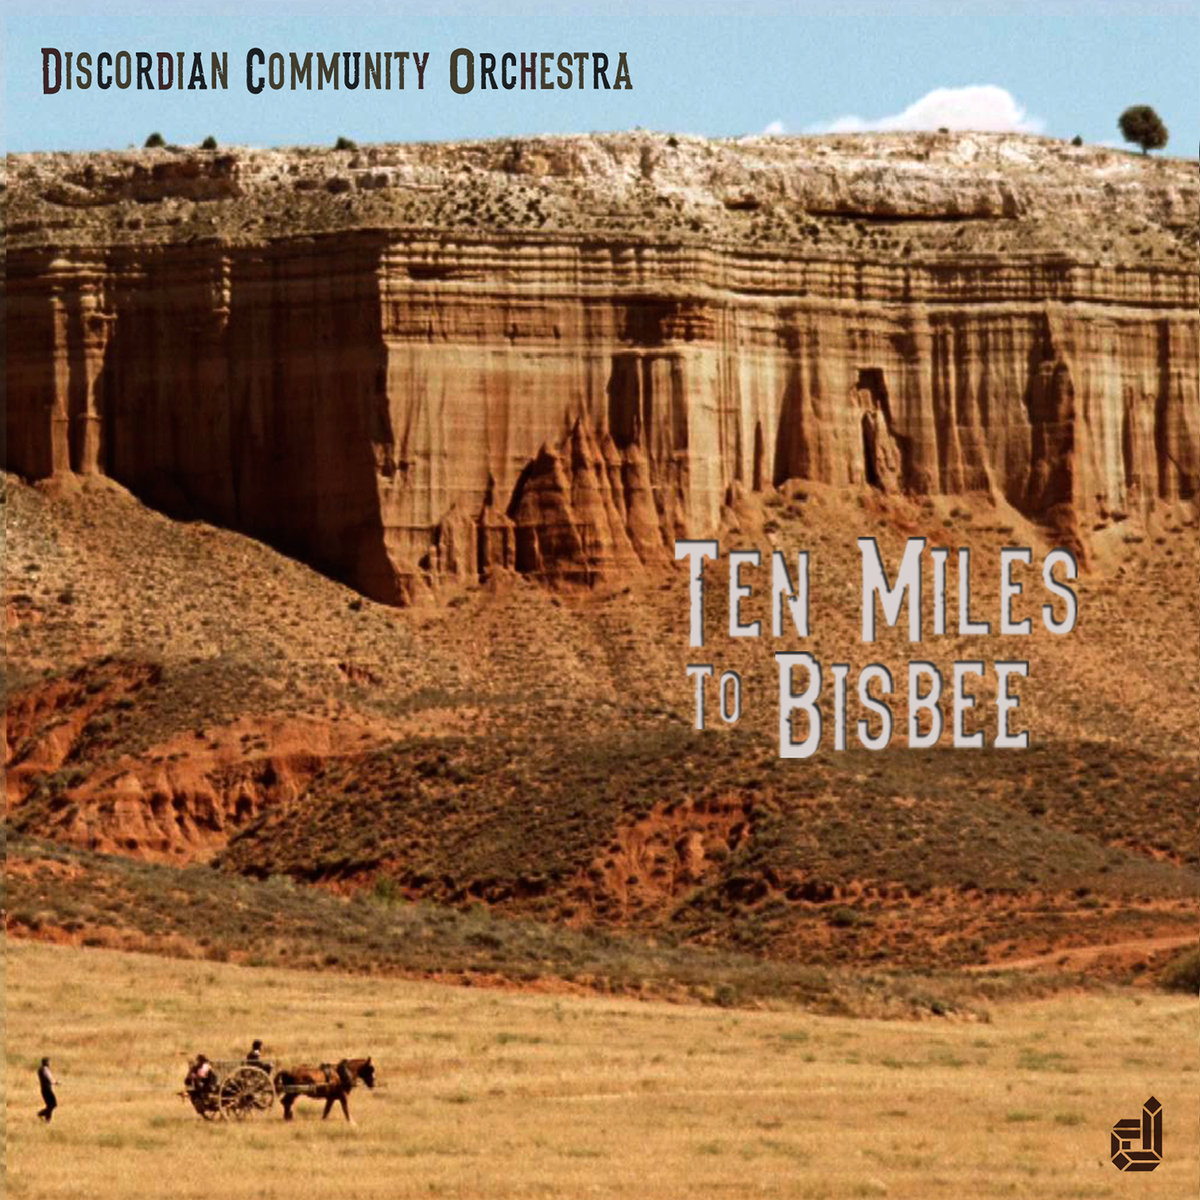 Ten Miles to Bisbee [film score]